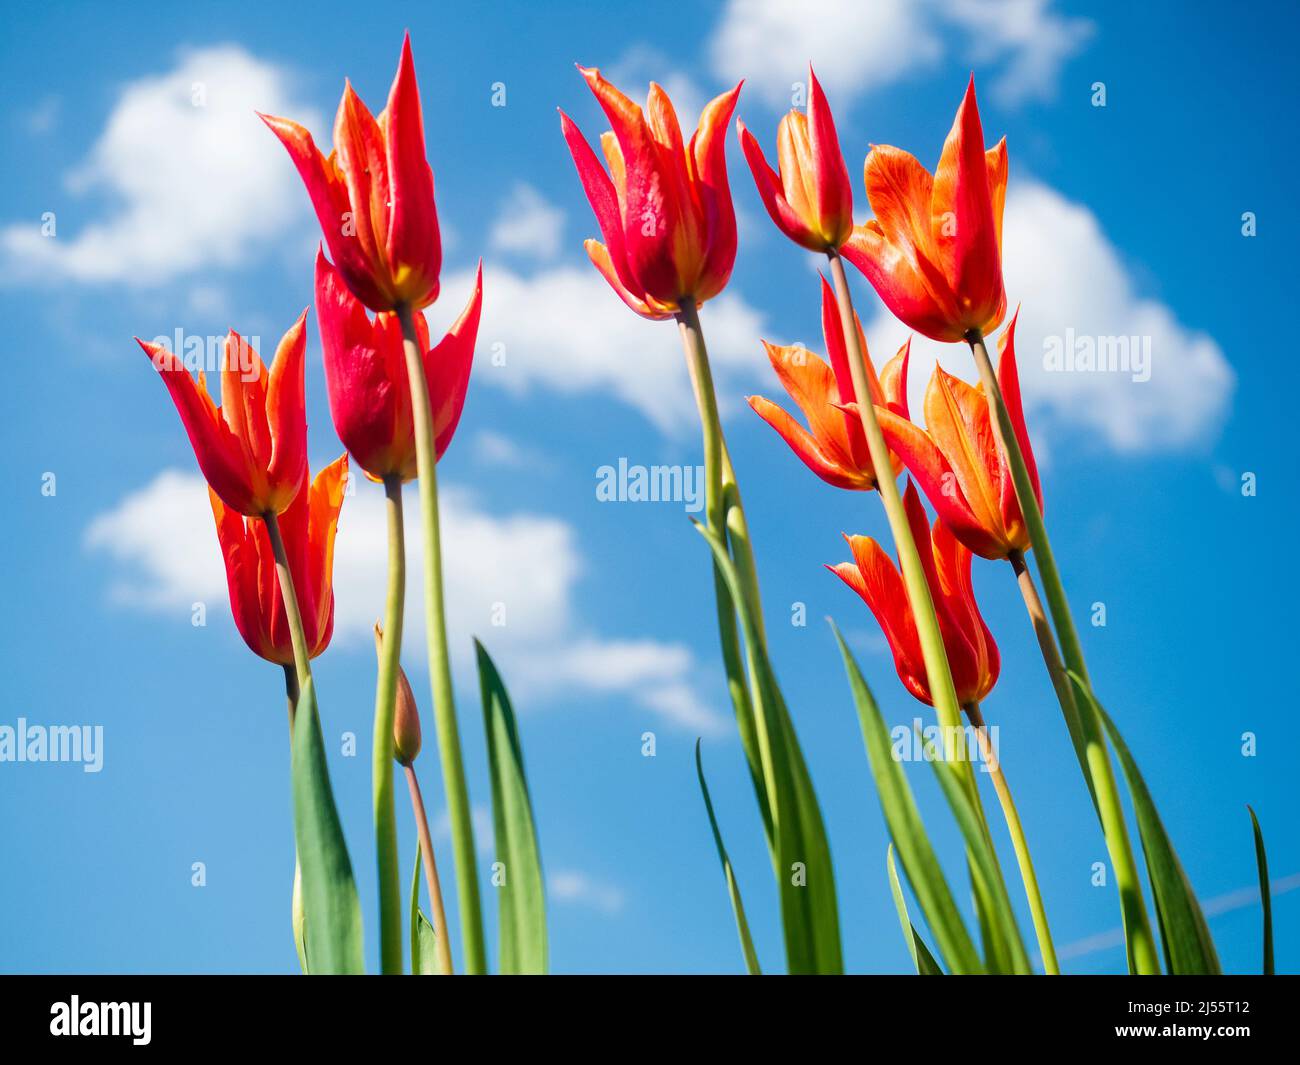 Duftende Orangenblüten der eleganten Lilie blühenden Tulpe 'Ballerina', vor einem blauen Frühlingshimmel Stockfoto